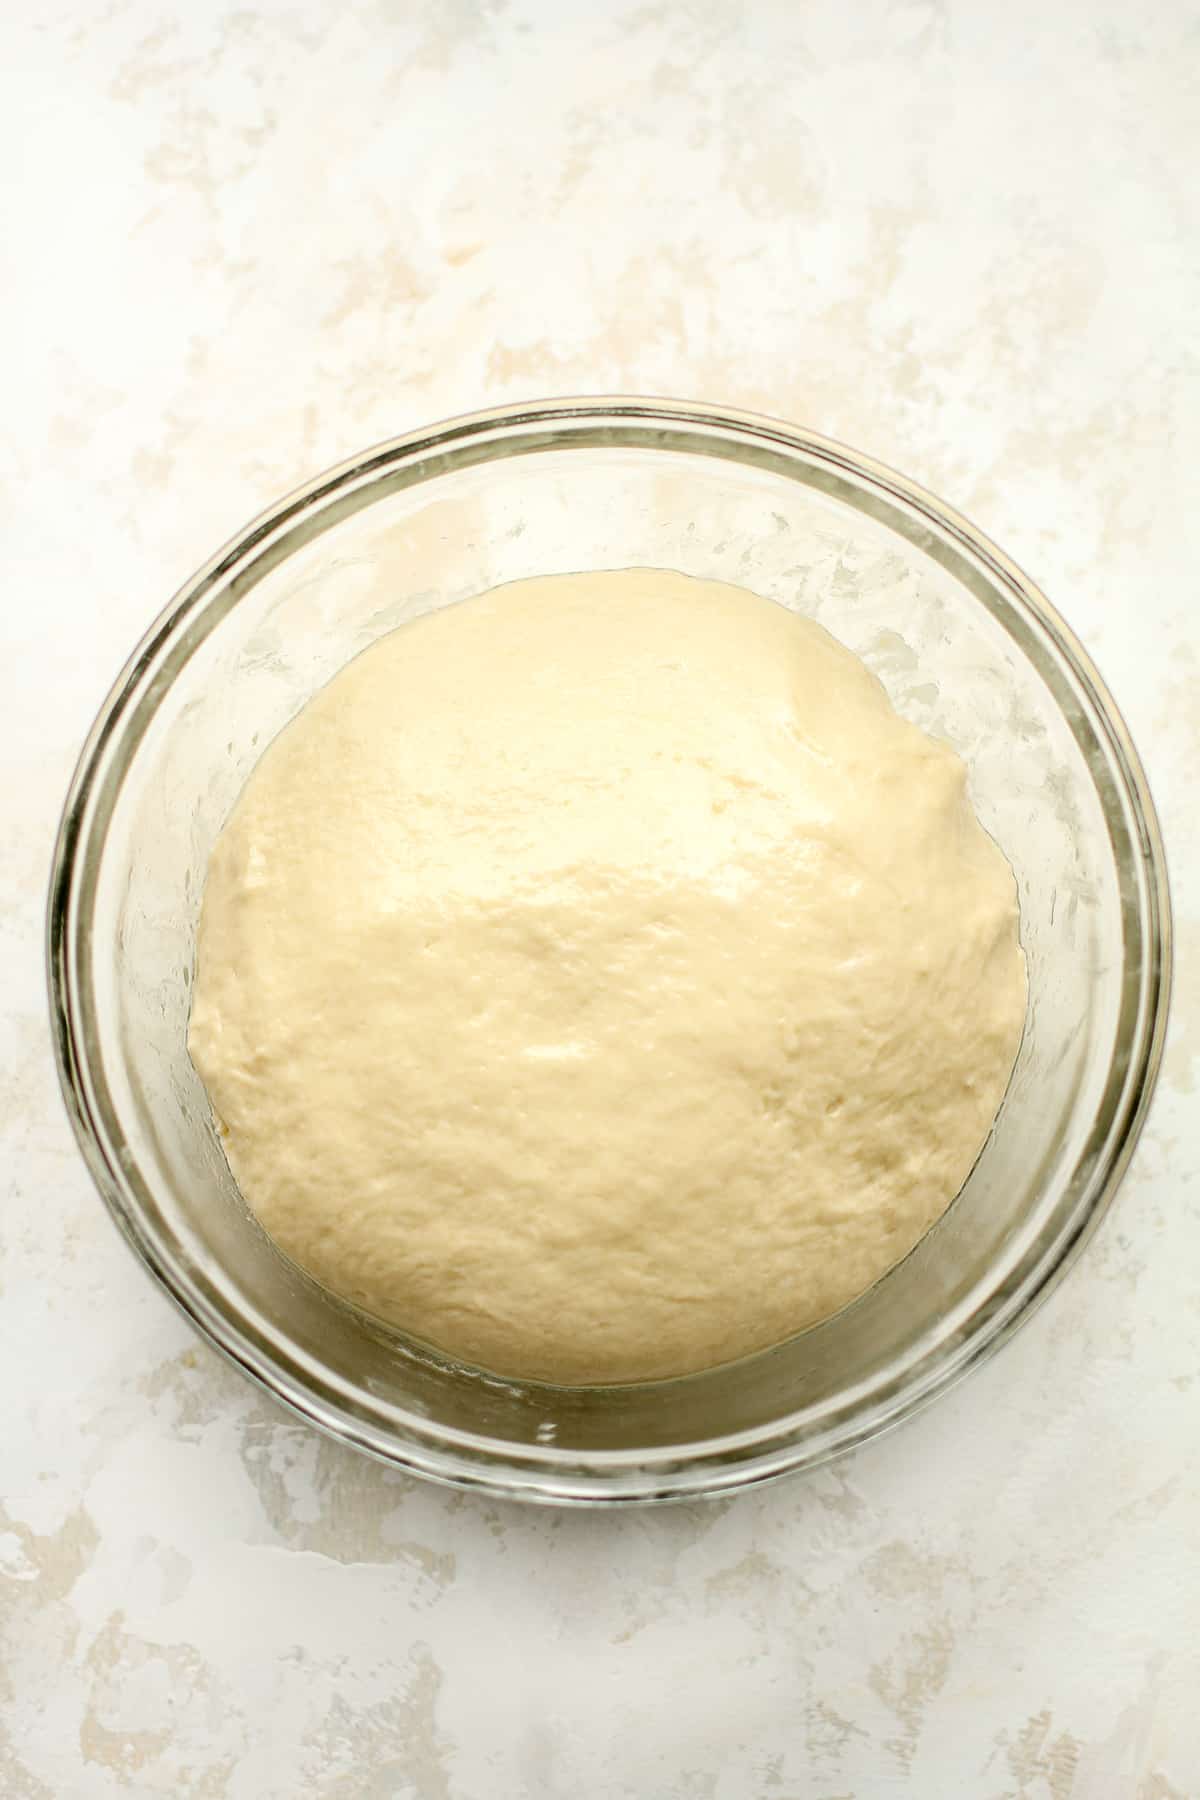 The brioche dough before rising.